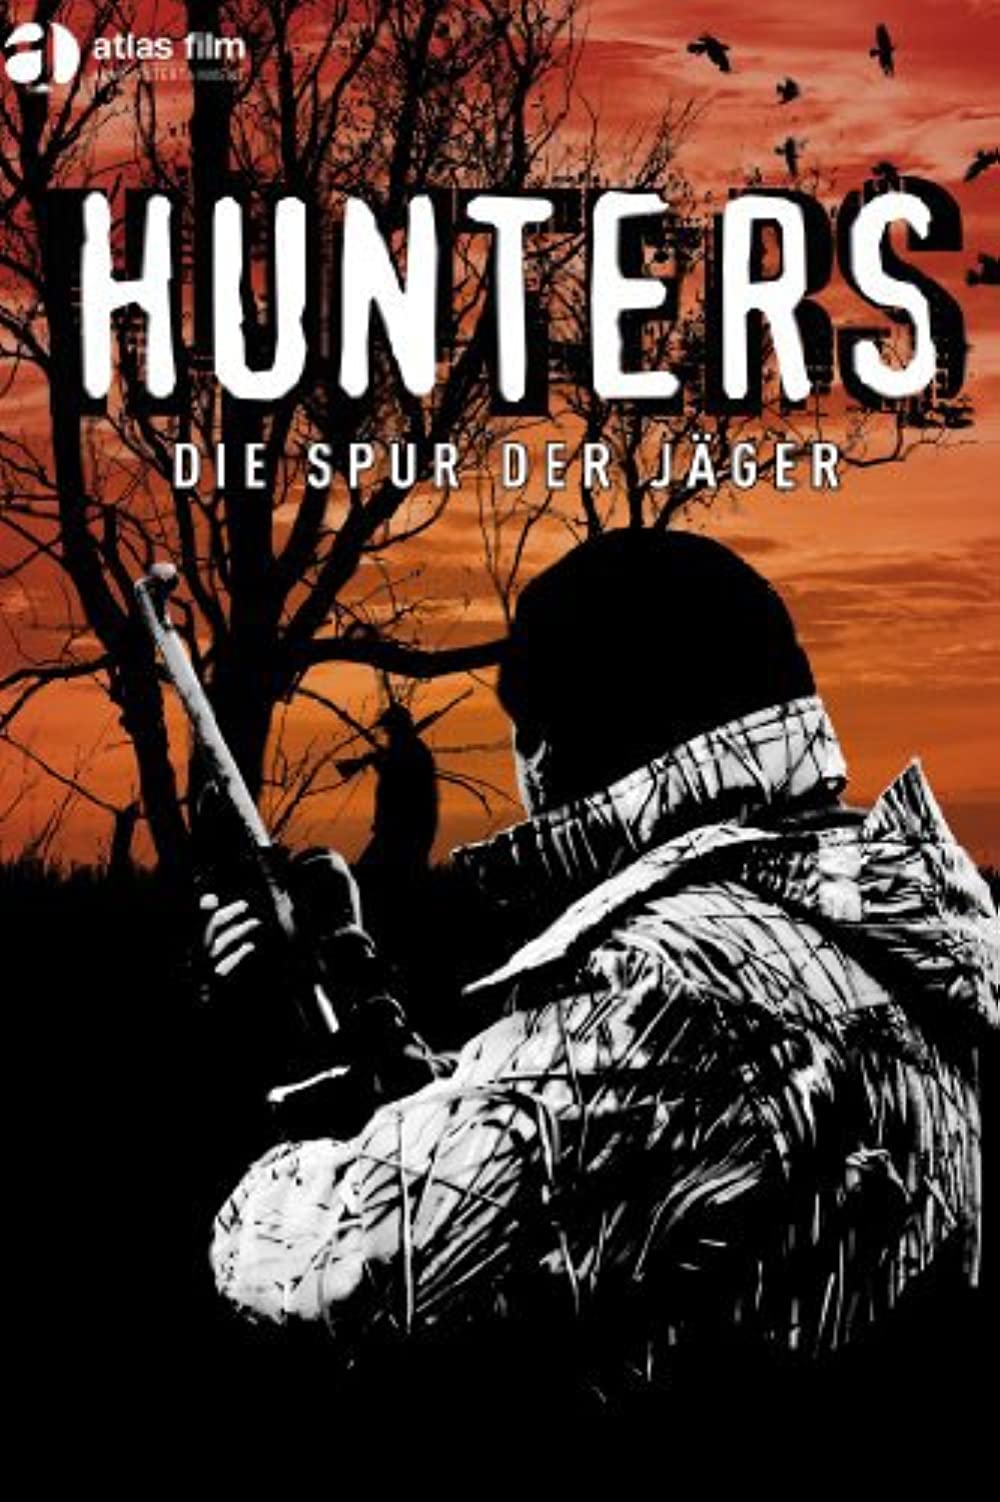 Filmbeschreibung zu Die Spur der Jäger